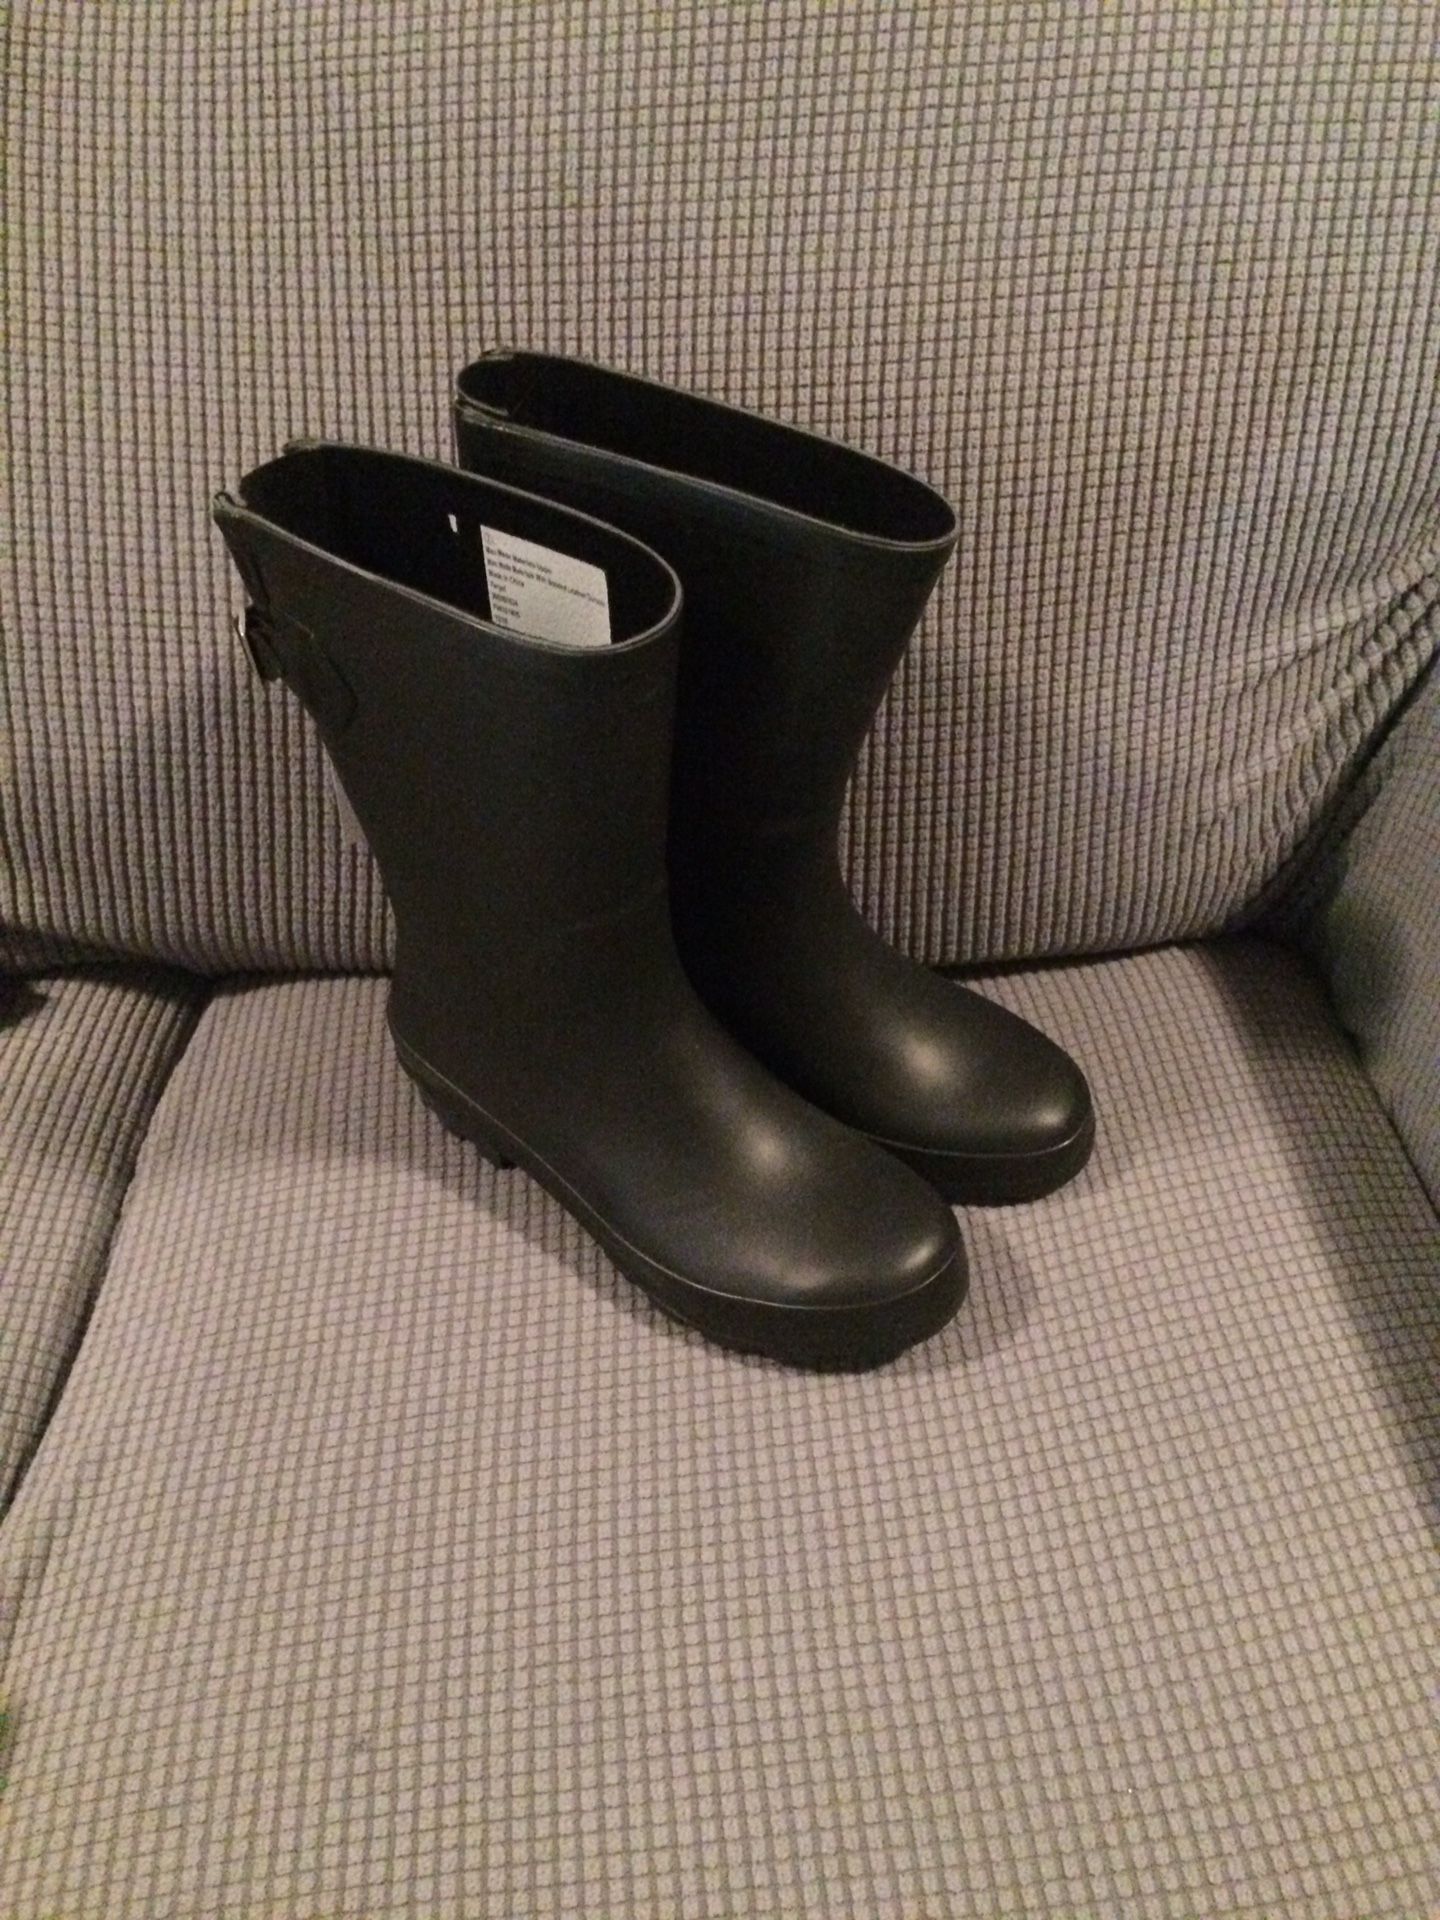 Size 7 rain boots